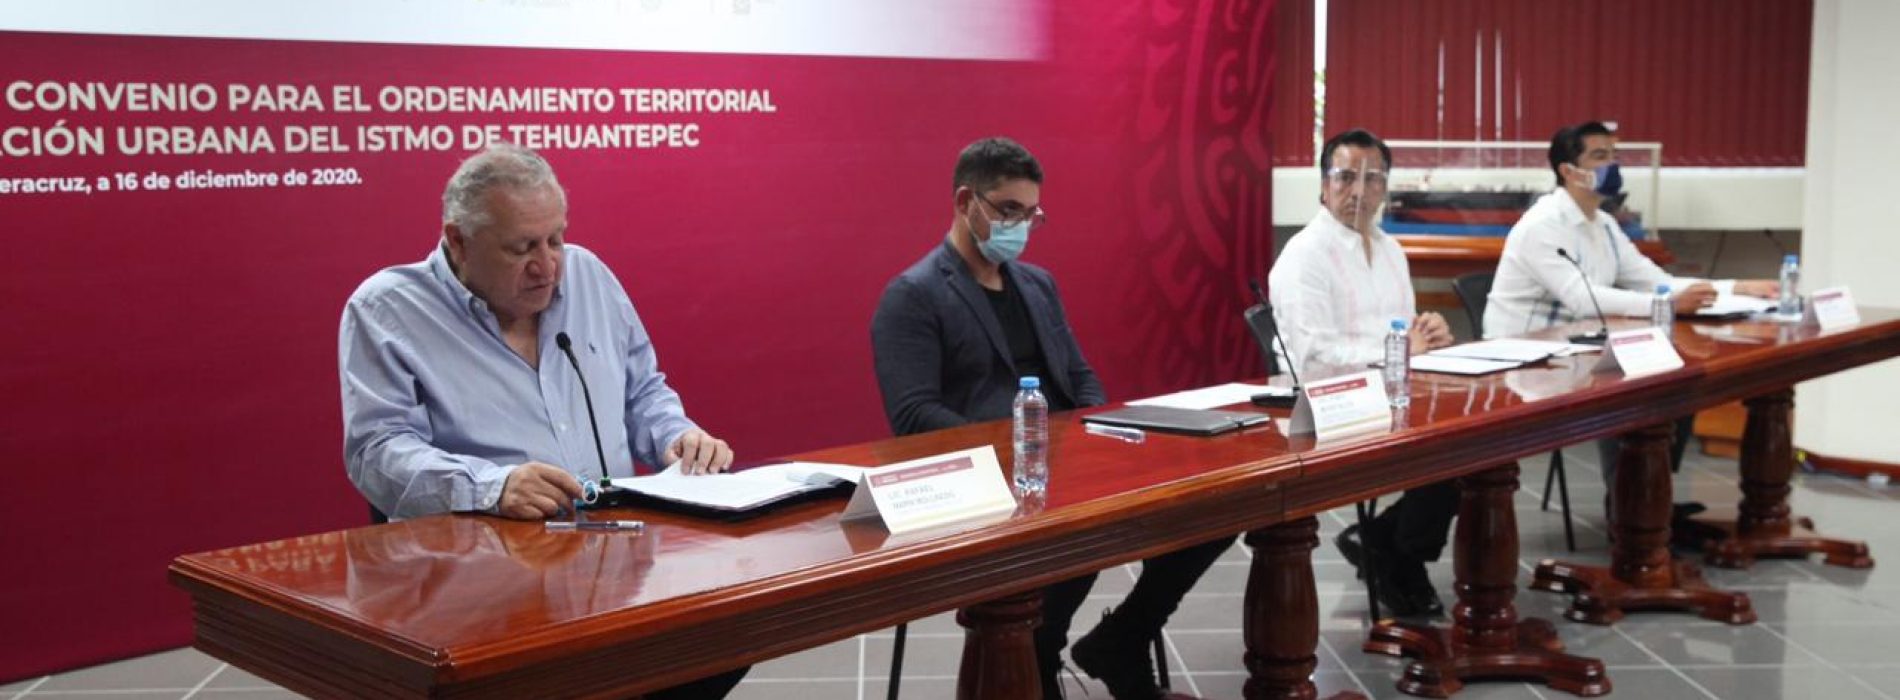 Gobiernos de Oaxaca y Veracruz, unidos para el Ordenamiento Territorial del Istmo de Tehuantepec